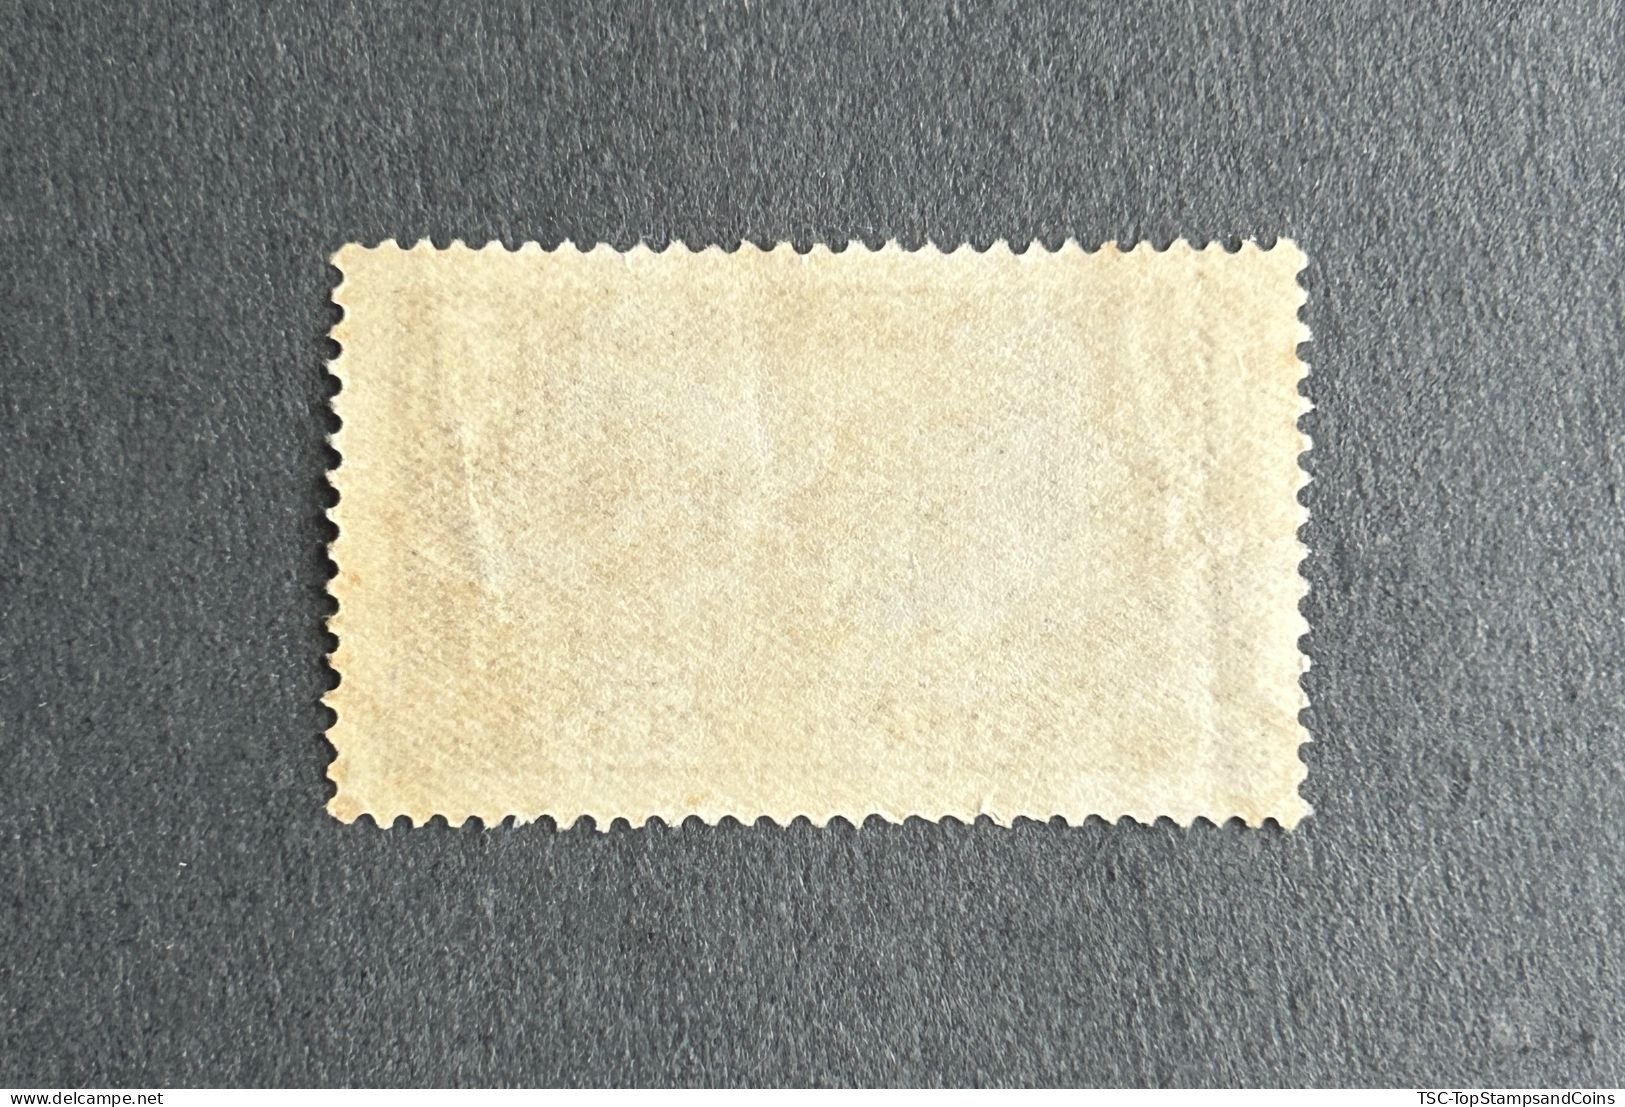 FRCG124U2 - Brazzaville - Pasteur Institute - 50 C Used Stamp - Middle Congo - 1933 - Usati